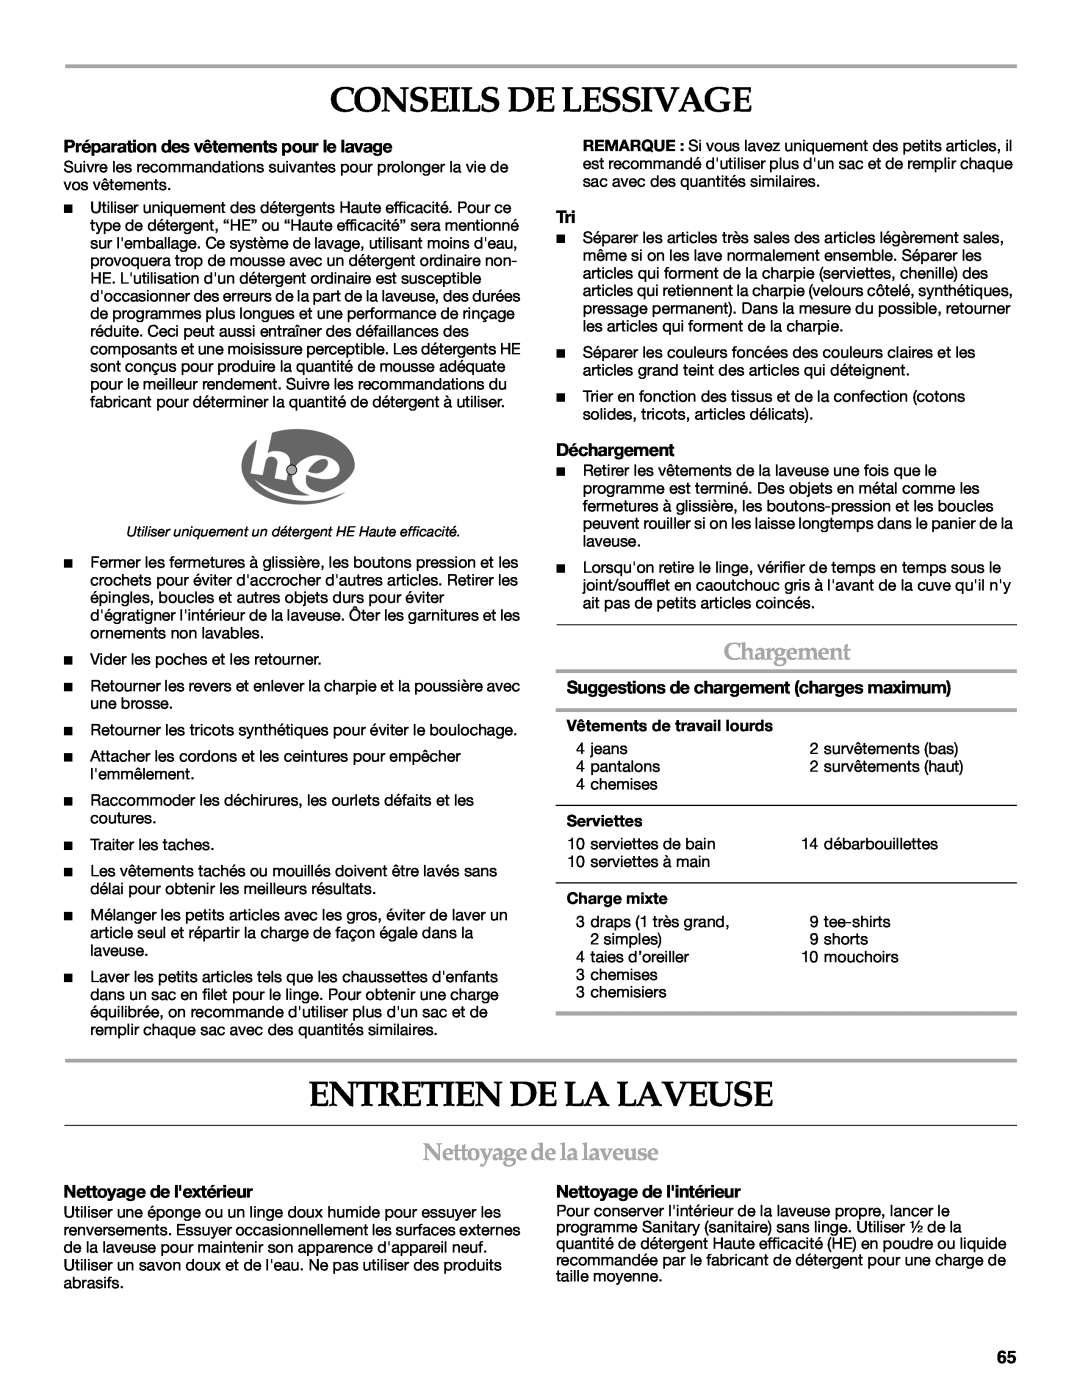 Maytag 8182969 manual Conseils De Lessivage, Entretien De La Laveuse, Chargement, Nettoyage de la laveuse, Déchargement 